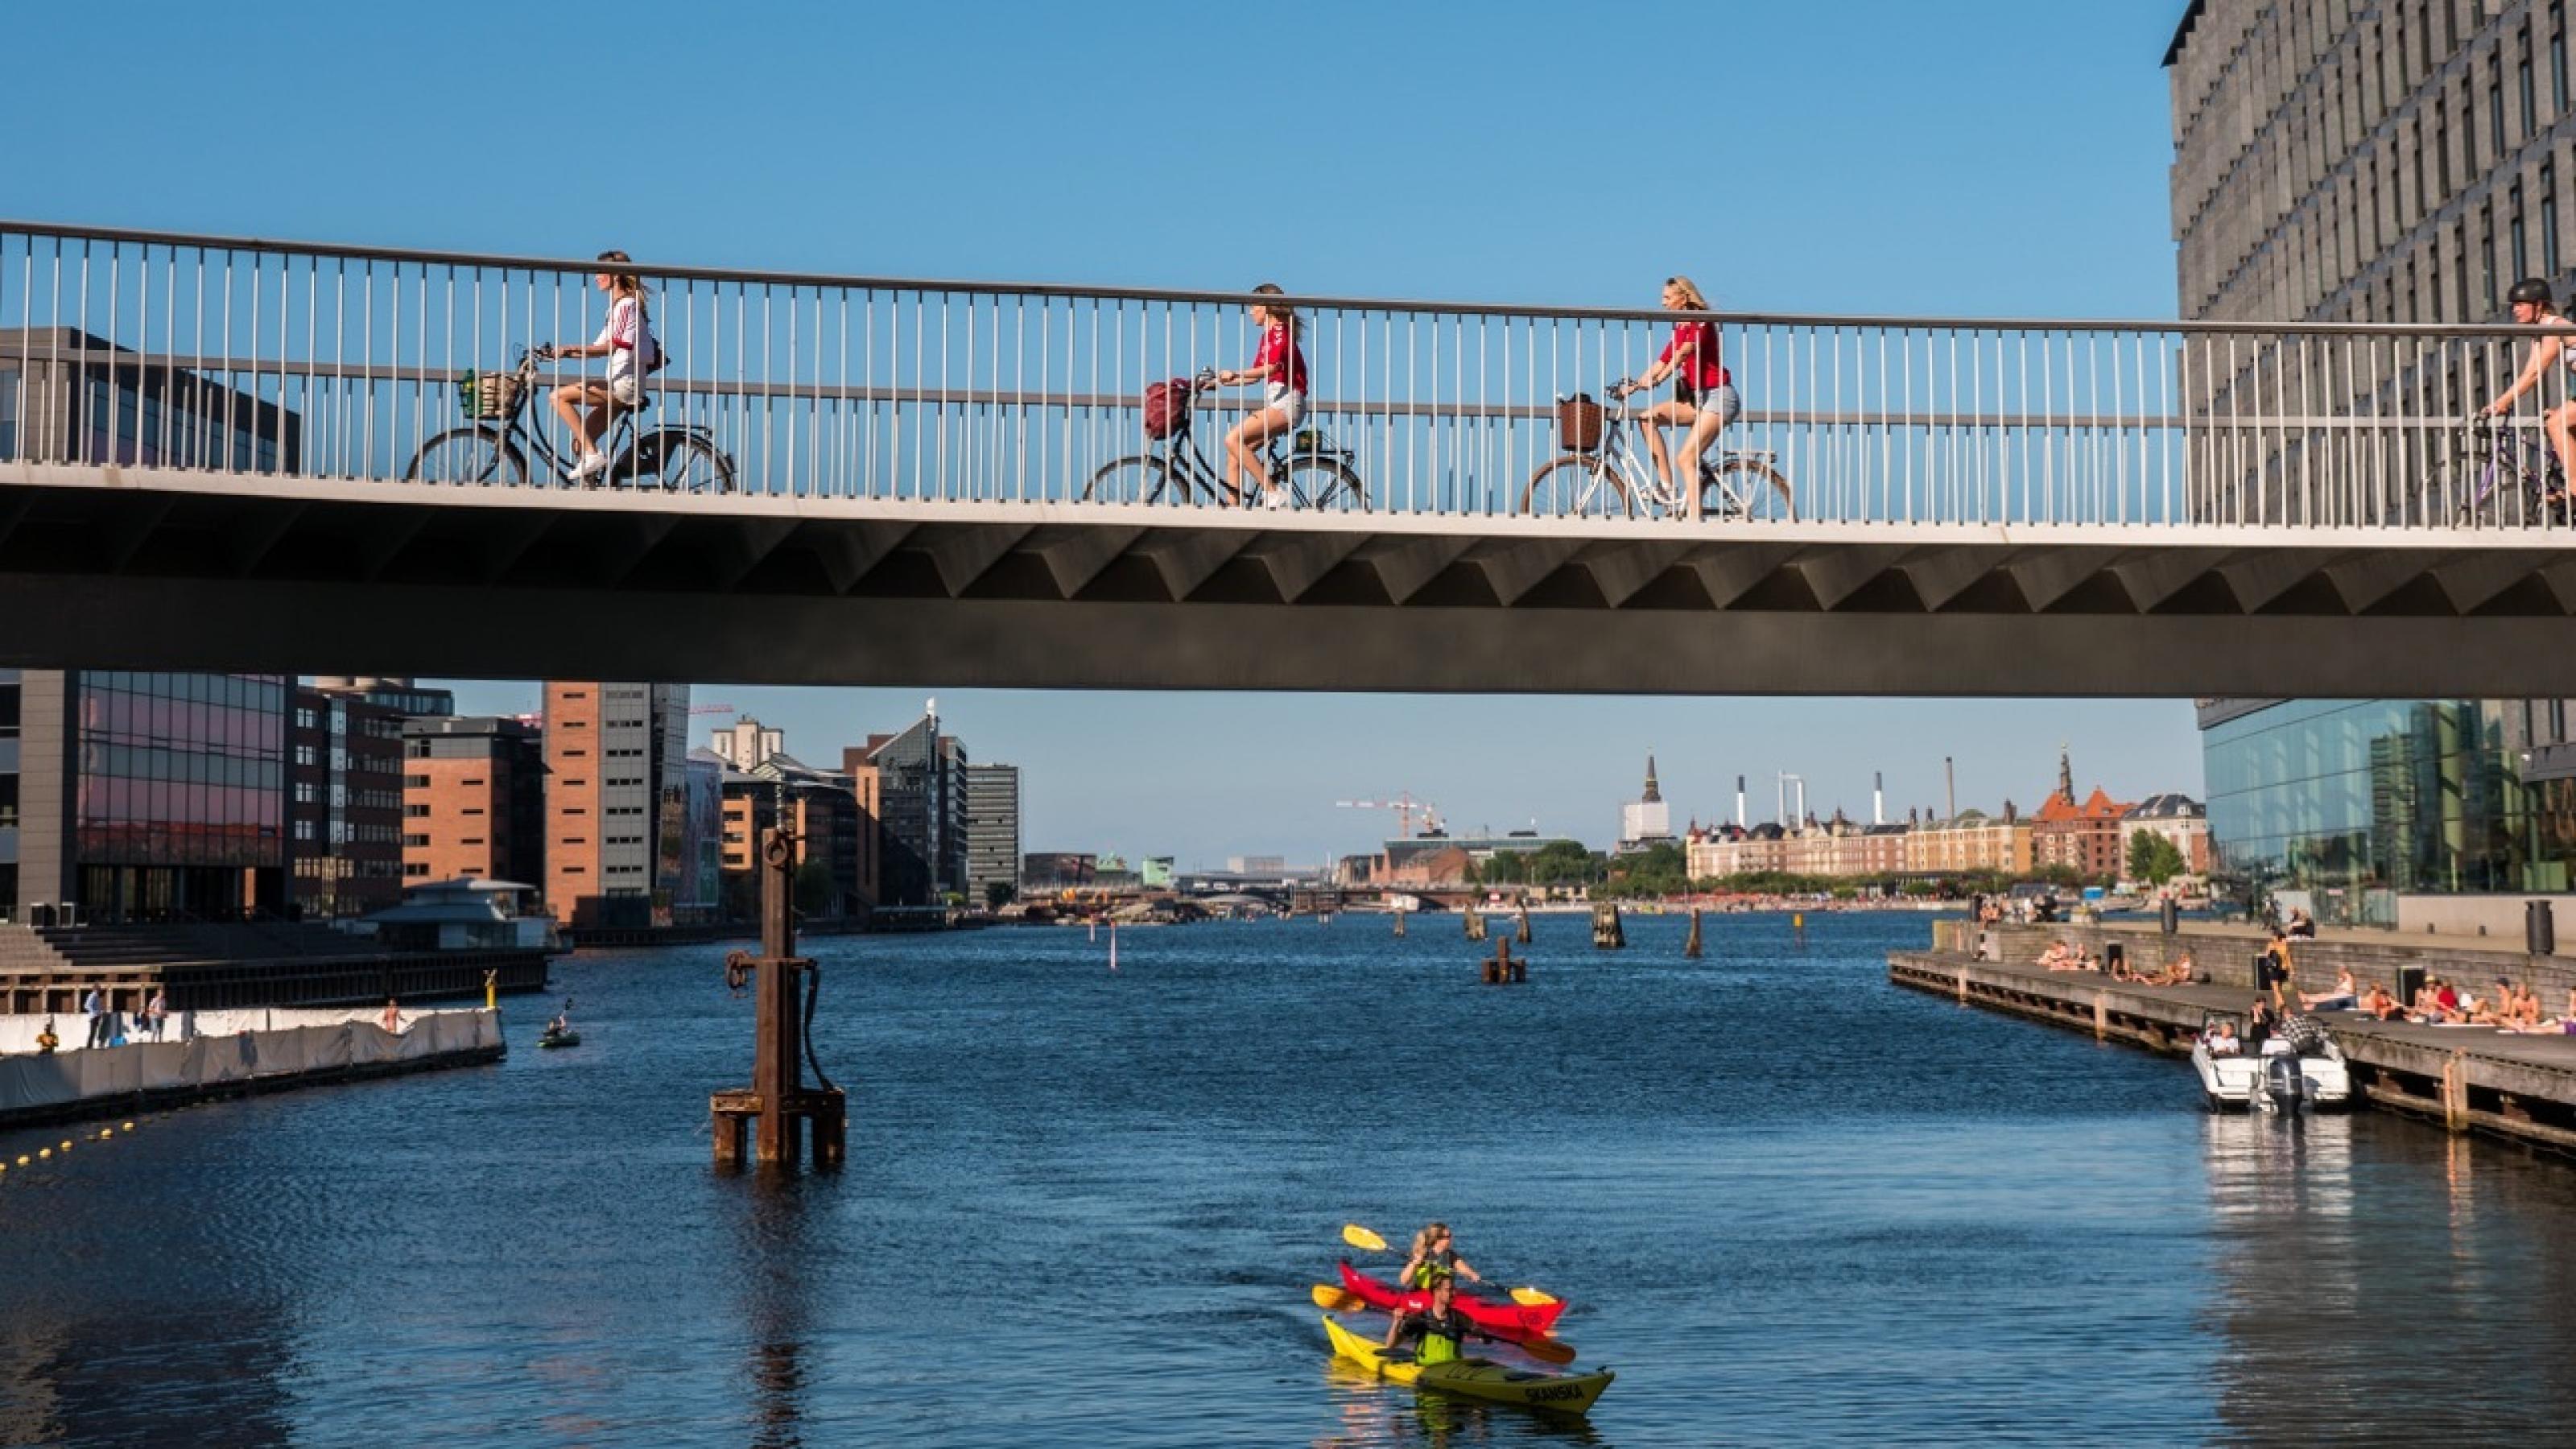 Zu sehen sind Radfahrer auf einer Brücke über ein Gewässer, in sattem Sonnenlicht.